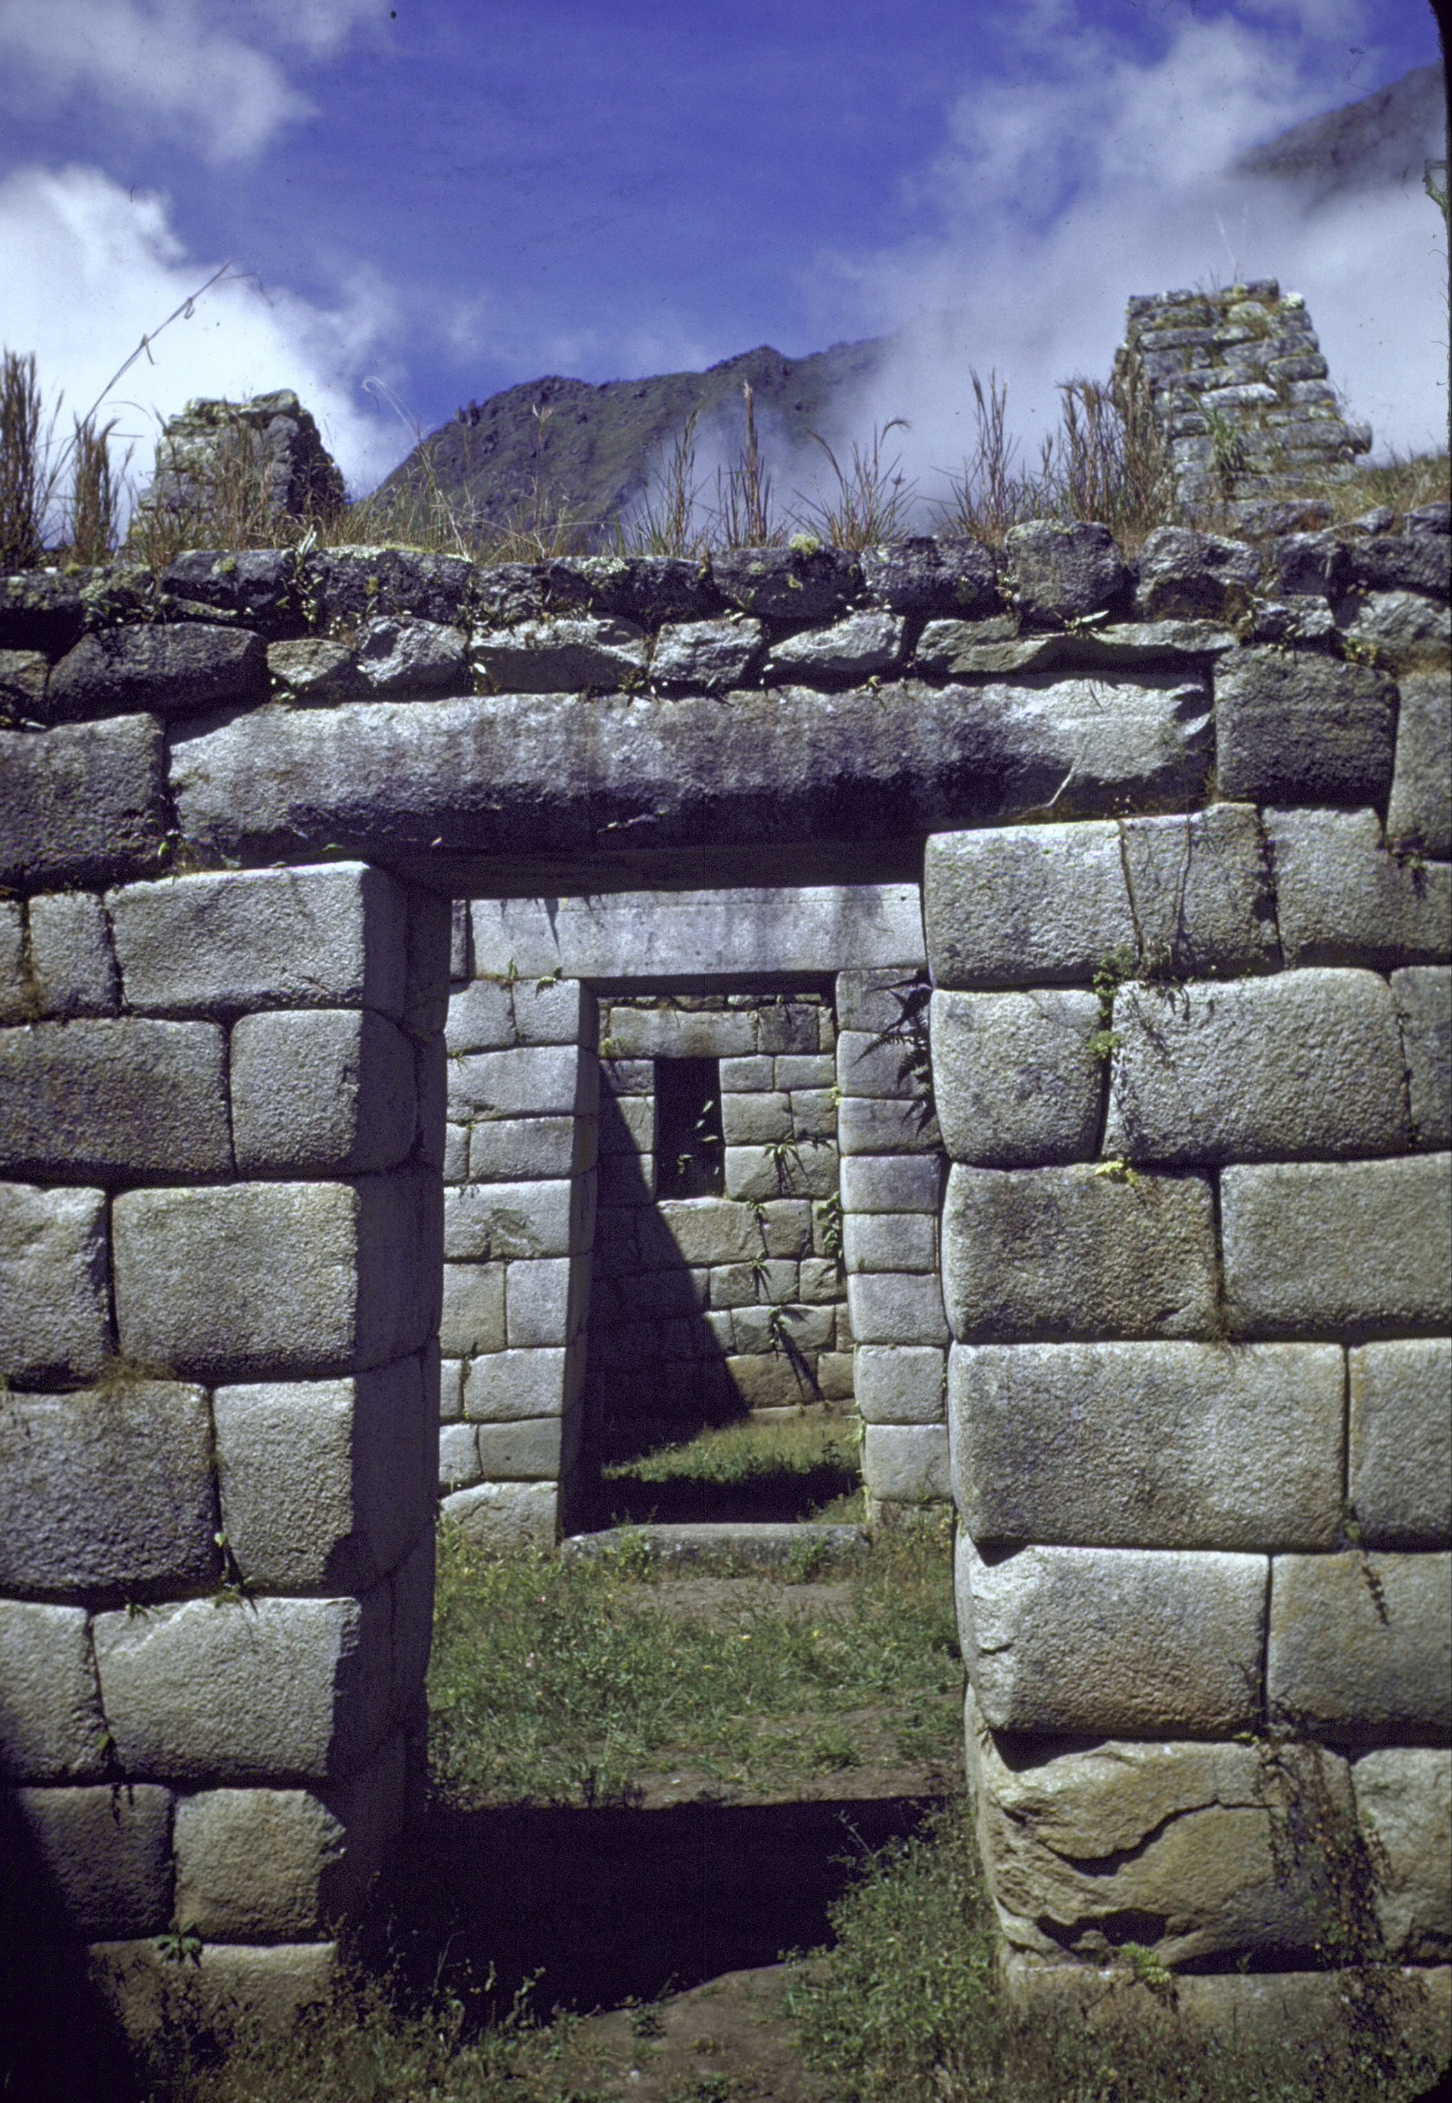 Трапециевидные входные проемы в руинах Мачу-Пикчу. Франк Шершель, 1945 г. Фотография из собрания Life Magazine.